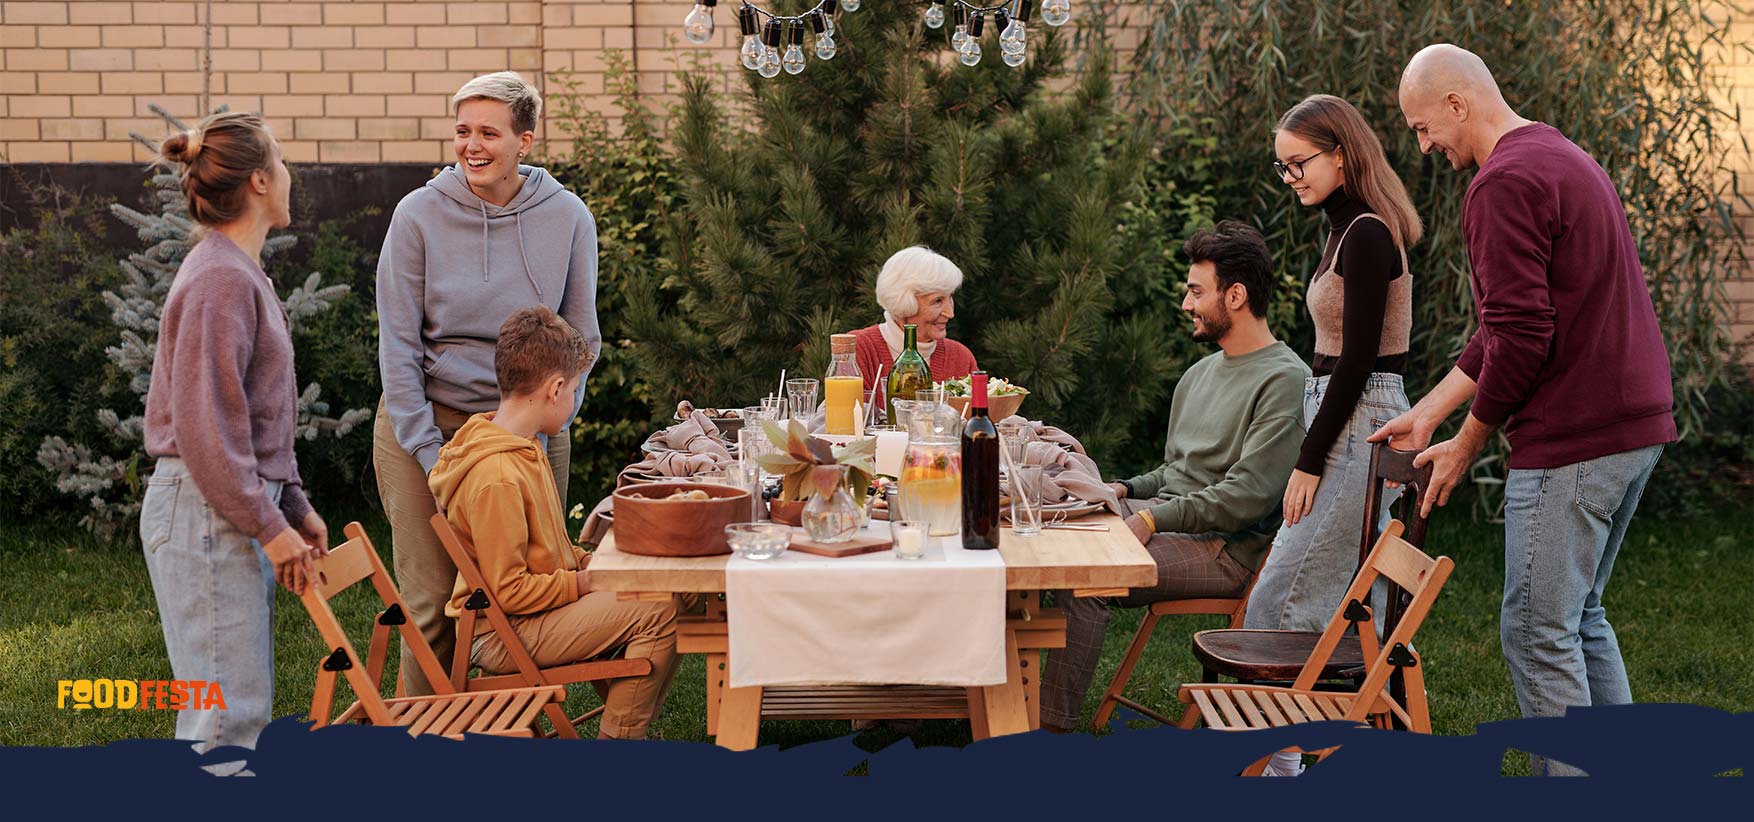 samen eten tijdens familie feest - buiten - oma, vader, moeder; zoon, dochter, oom, tante